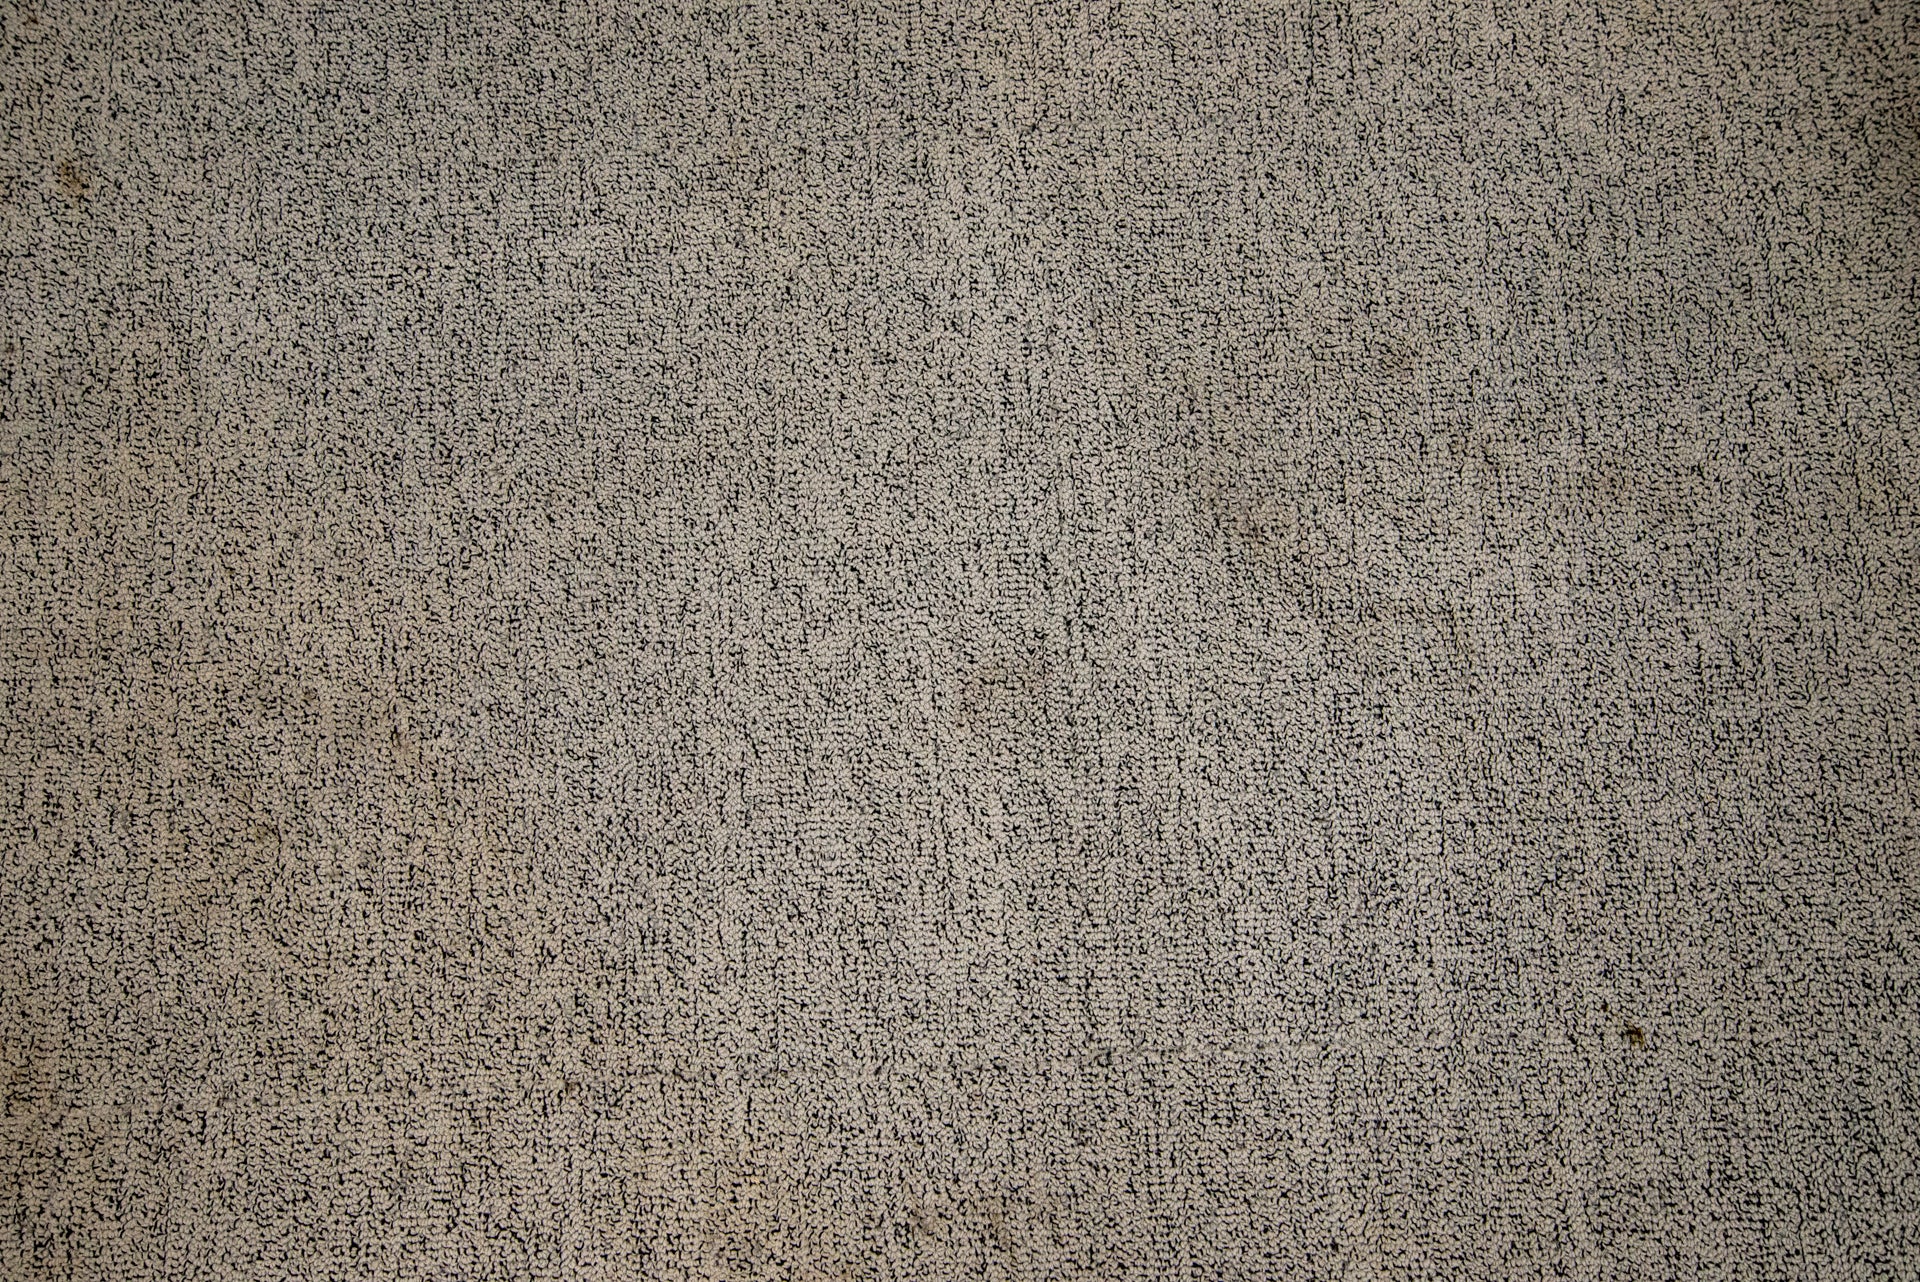 Vax Platinum SmartWash Carpet Cleaner clean mud